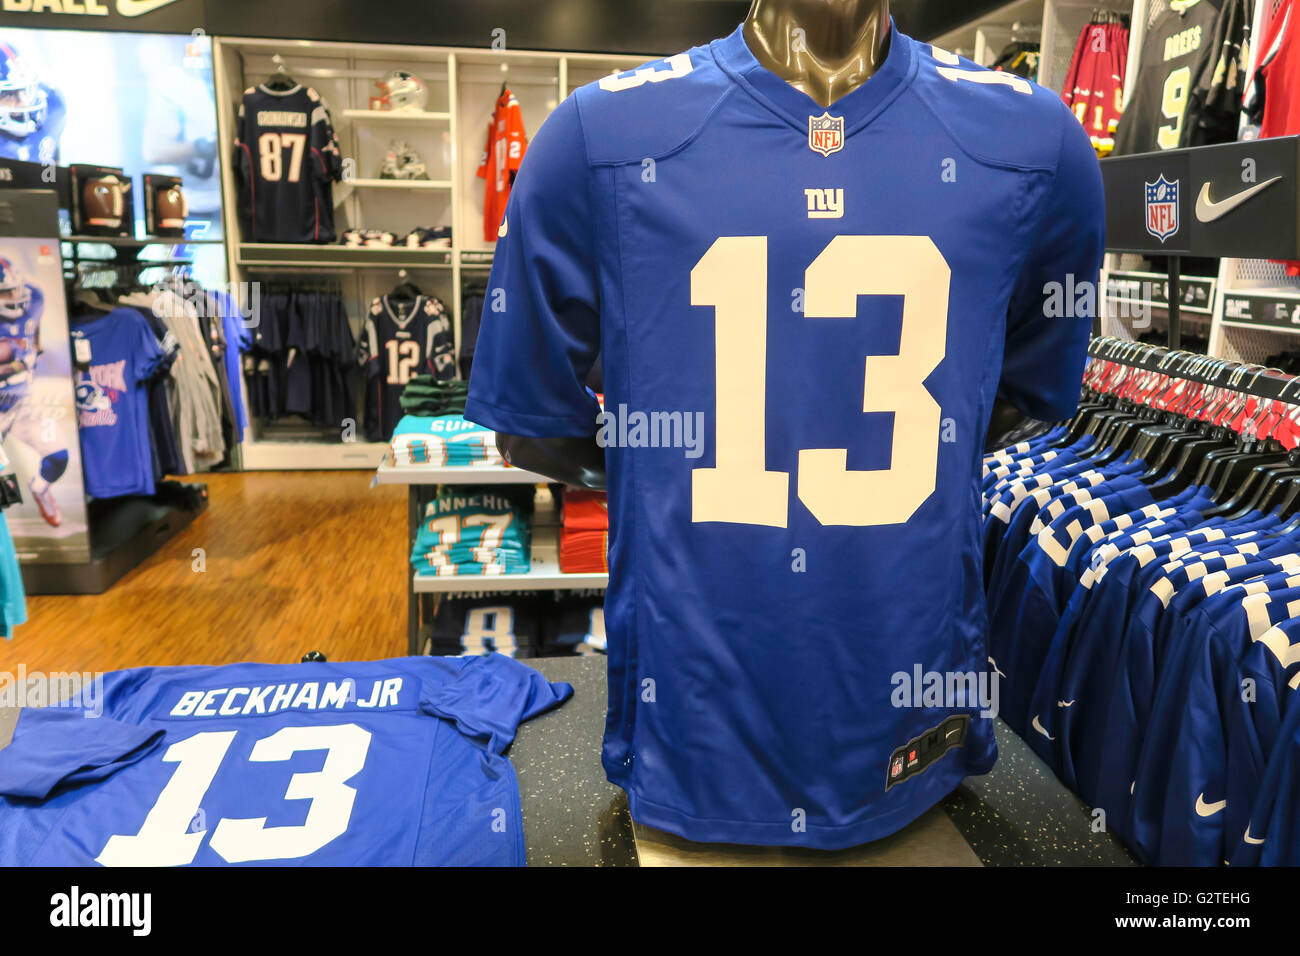 Mostrar ropa de marca de la NFL, Modell's Sporting Goods el interior de la  tienda, NYC Fotografía de stock - Alamy